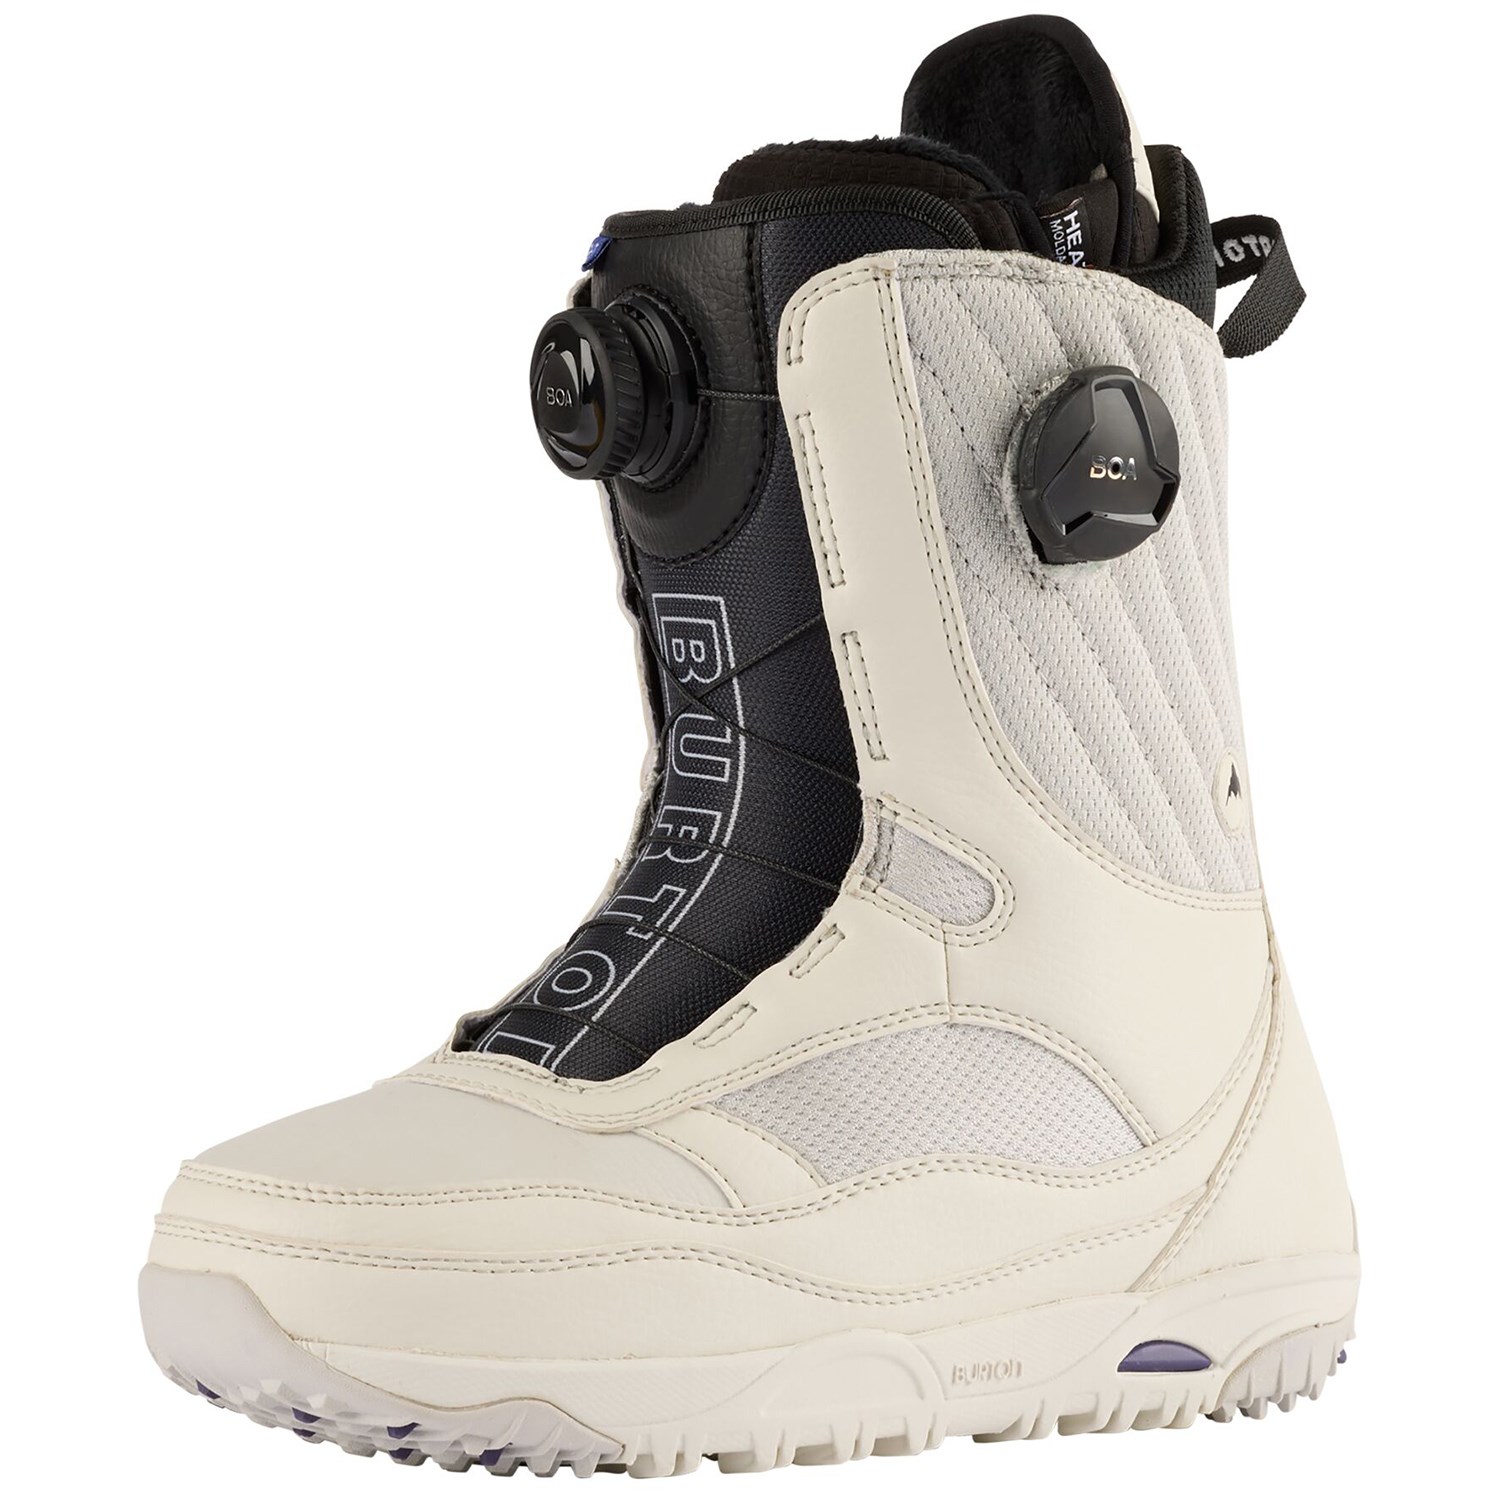 Ботинки для сноуборда Burton Limelight Boa, белый ботинки для сноуборда burton grom boa цвет белый фиолетовый длина стельки 21